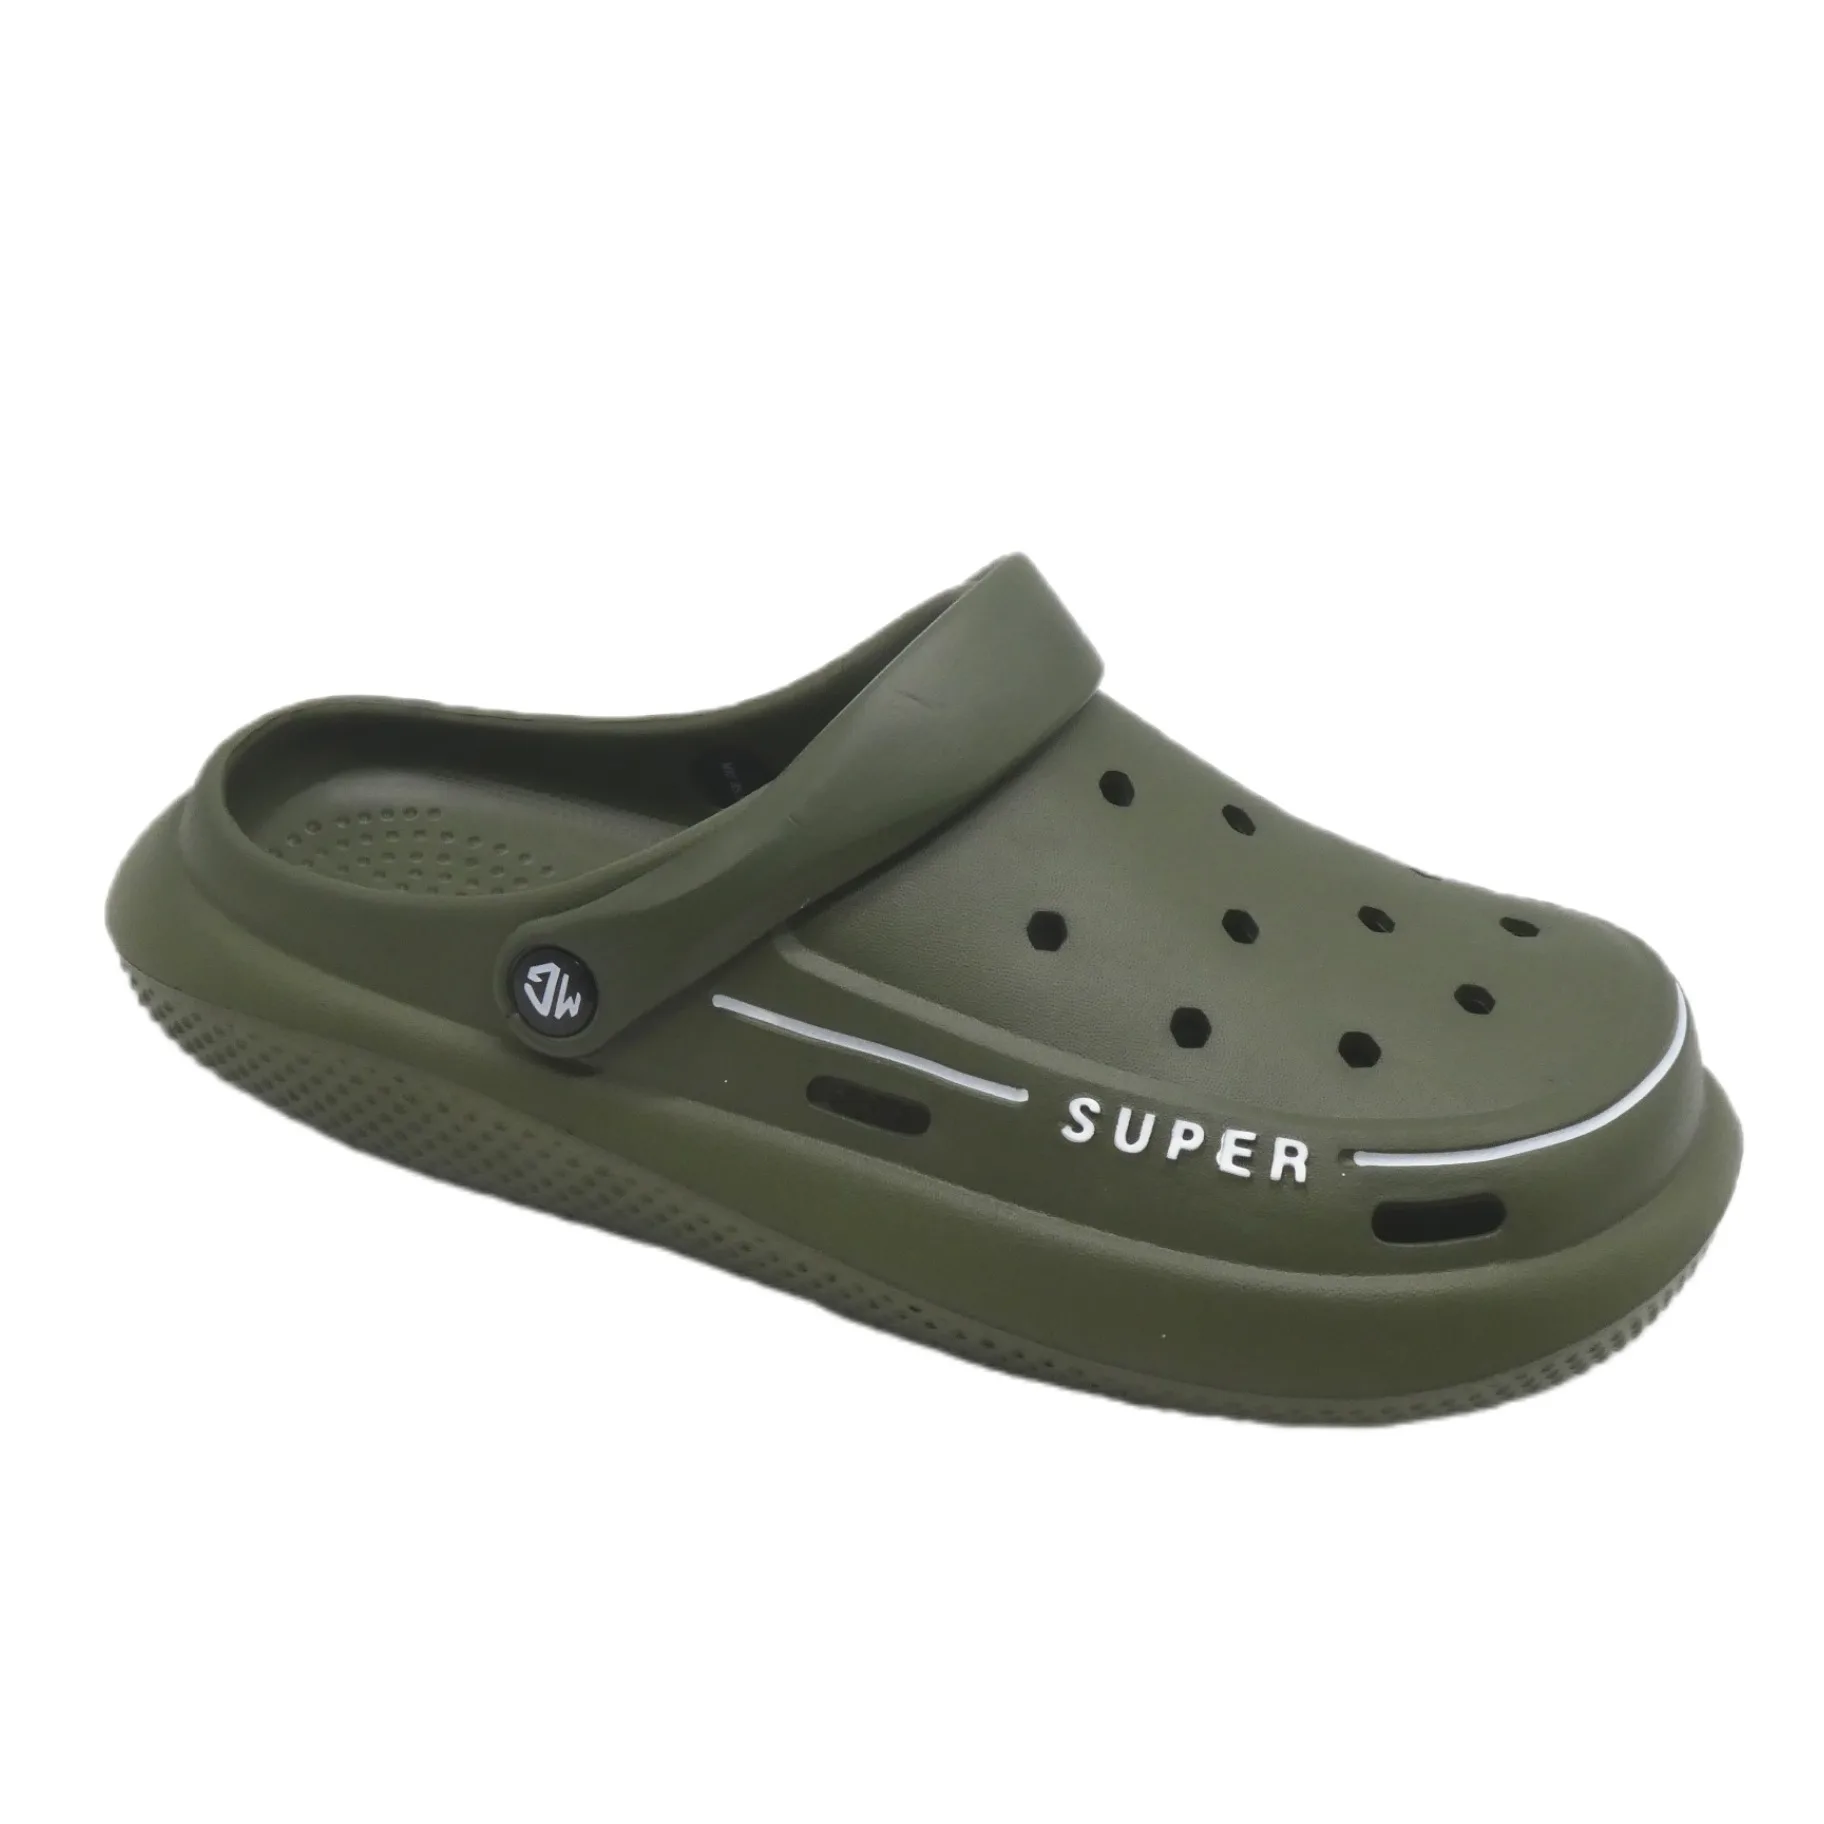 high quality heva custom men slides summer beach slippers for men outdoor garden shoes beach slippers EVA insole unisex sandal